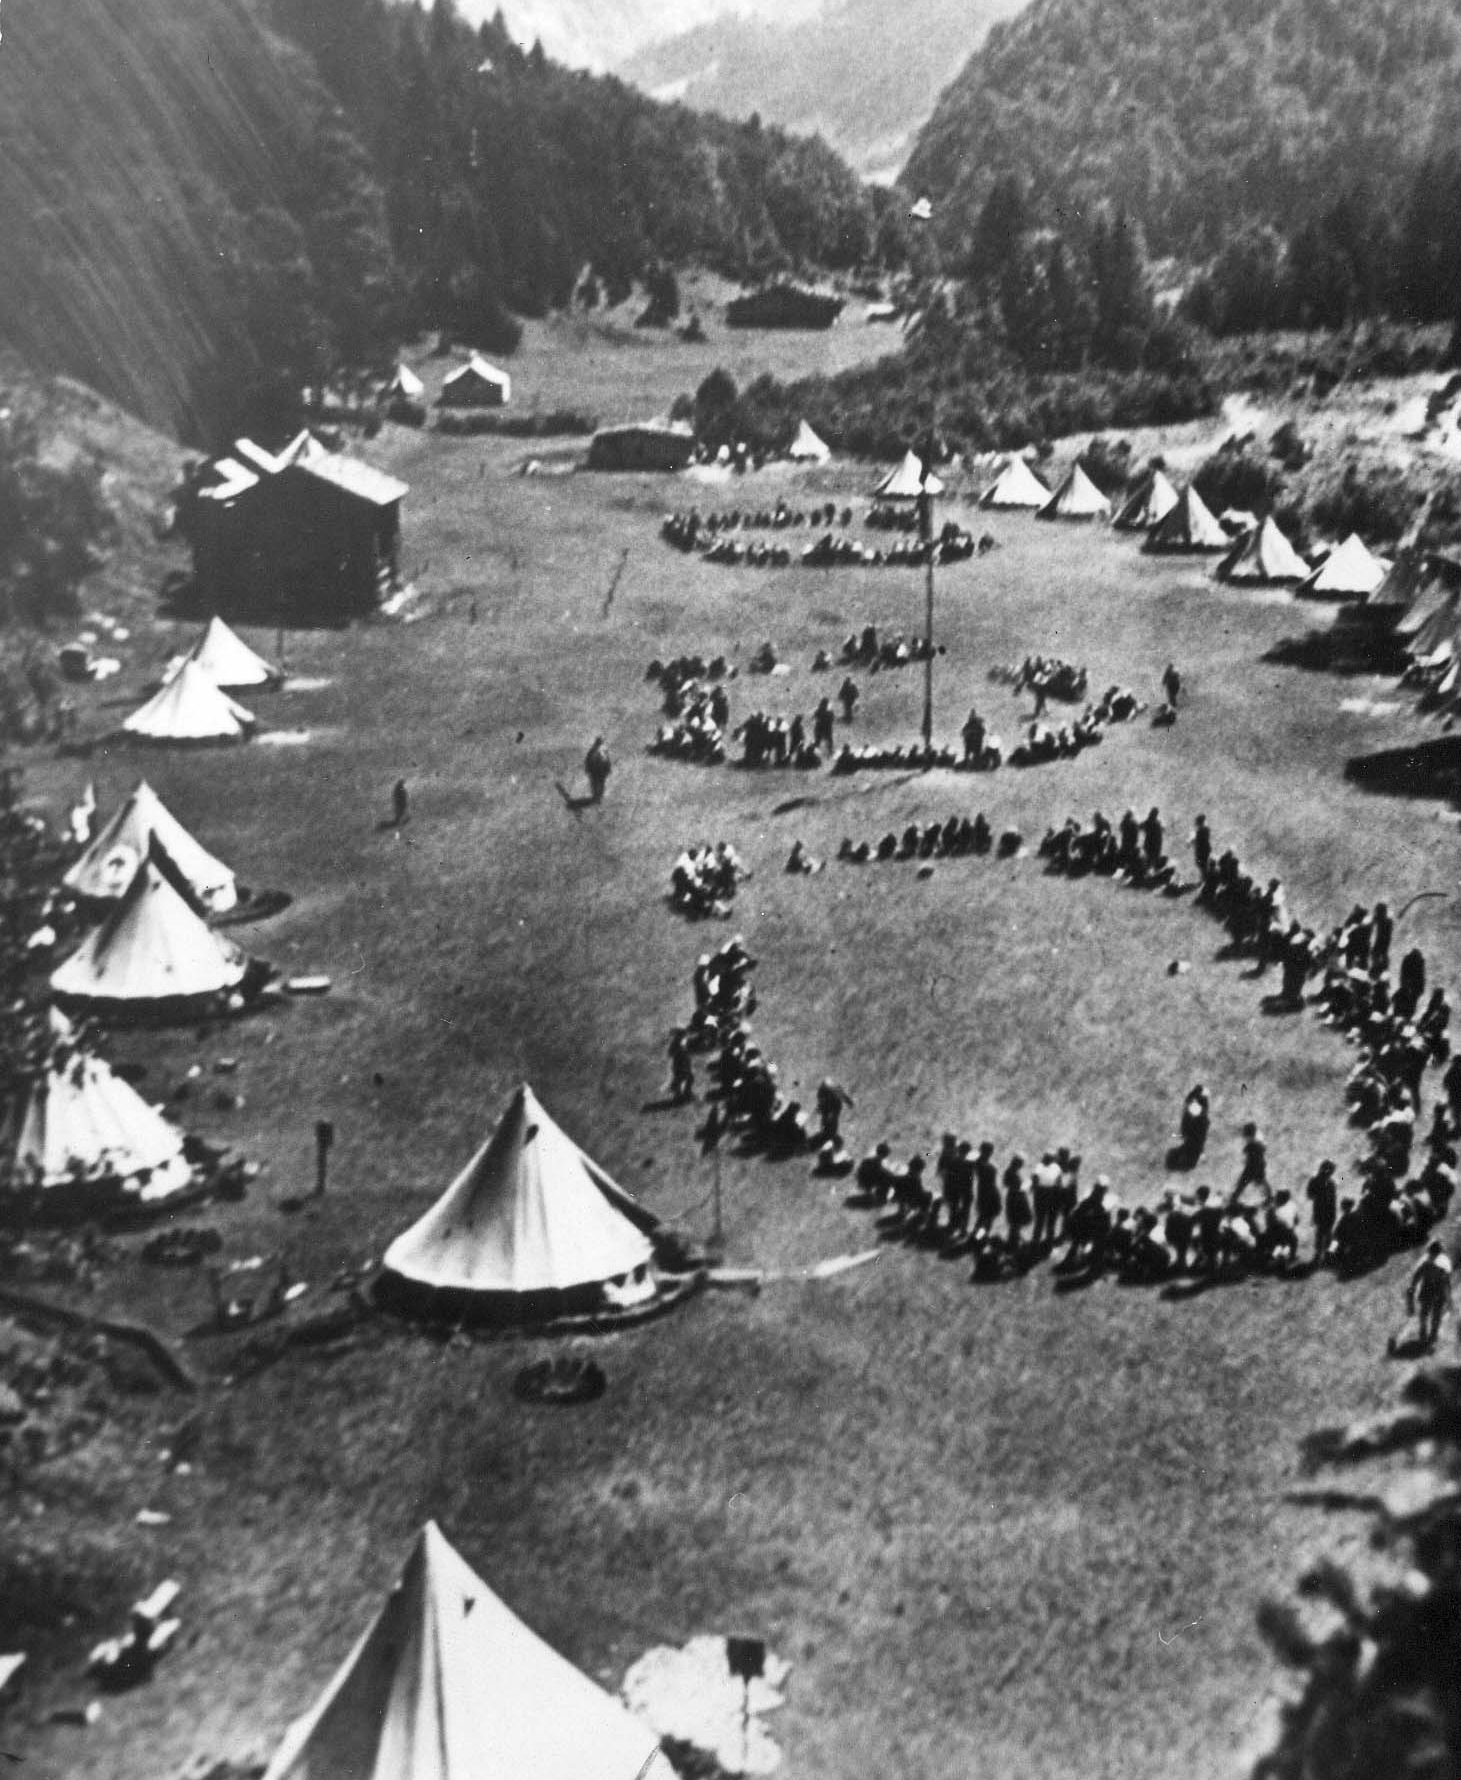 Schwarz-Weiß-Fotografie der Kinderrepublik "Heinrich Jasper" im Allgäu 1929, Panoramaaufnahme von schräg oben, im Bild sind Zelte und ein großer Kreis von Kindern. AdsD 6/FOTB016117.